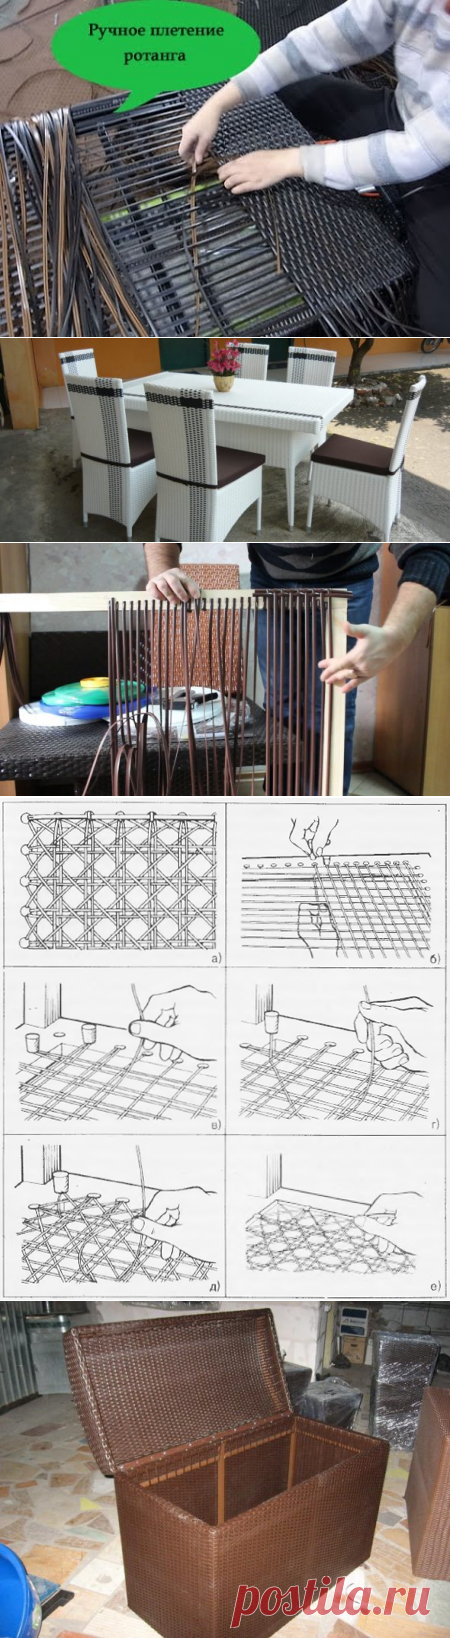 Плетение из искусственного ротанга для начинающих обучение. Каркасы для плетения из искусственного ротанга. Уроки плетения из искусственного ротанга. Плетение мебели из ротанга для начинающих. Плетение мебели каркас.